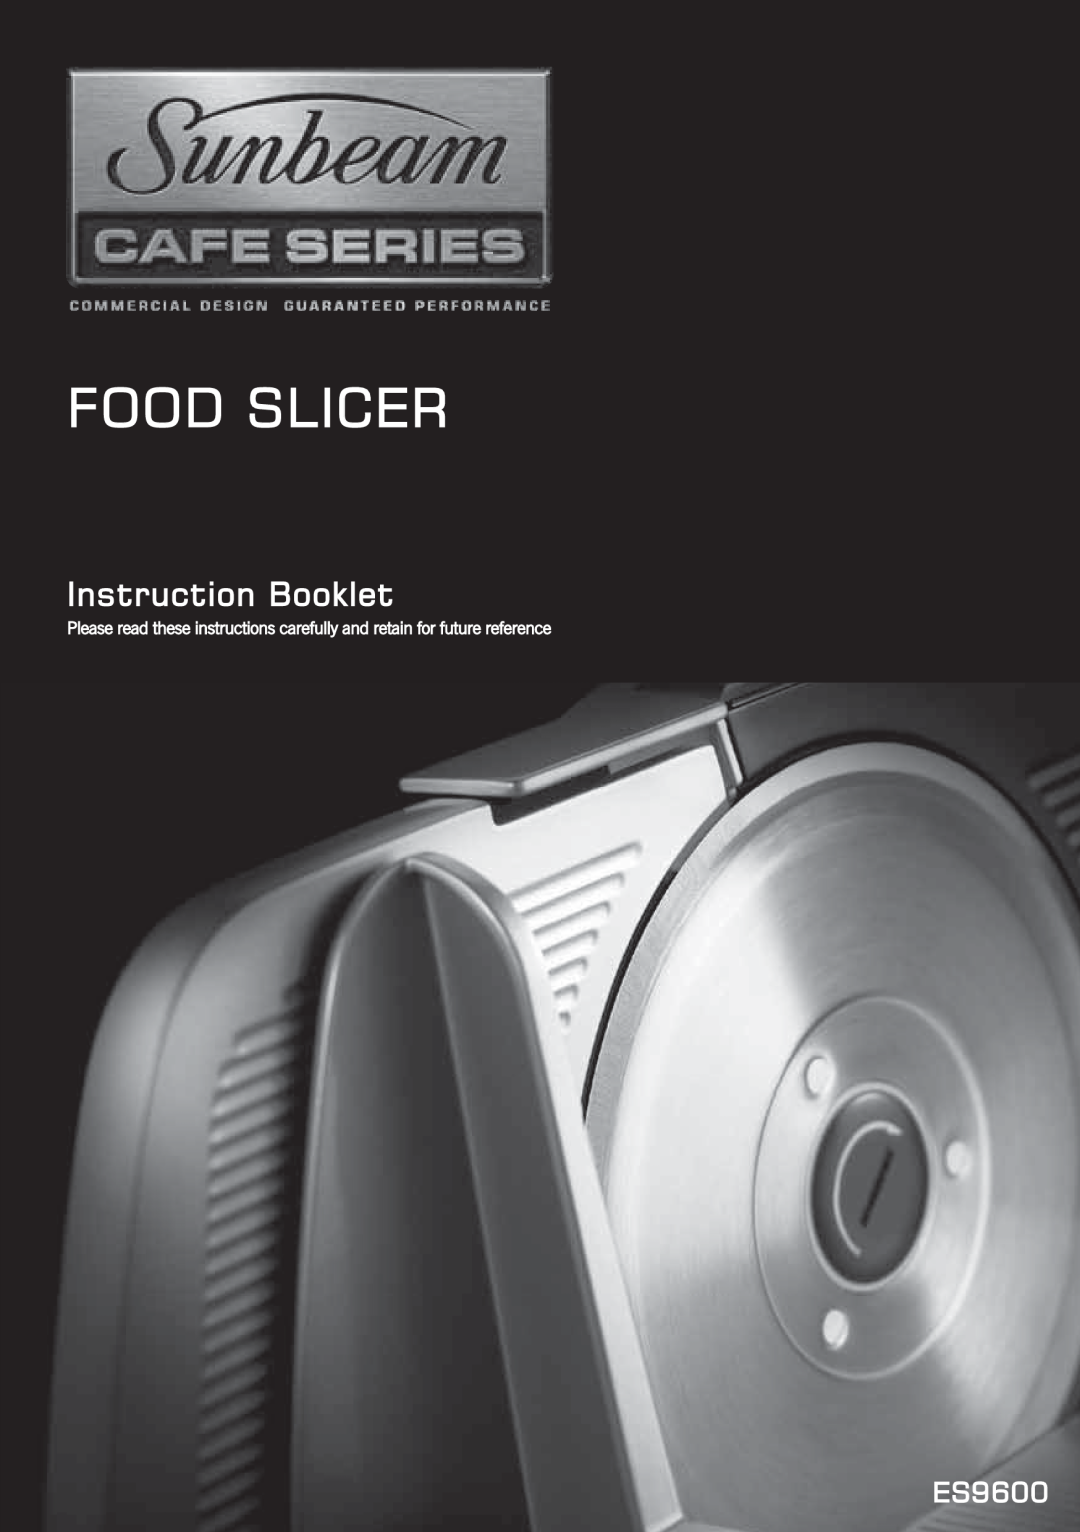 Sunbeam ES9600 manual Food Slicer, InstructionBooklet 